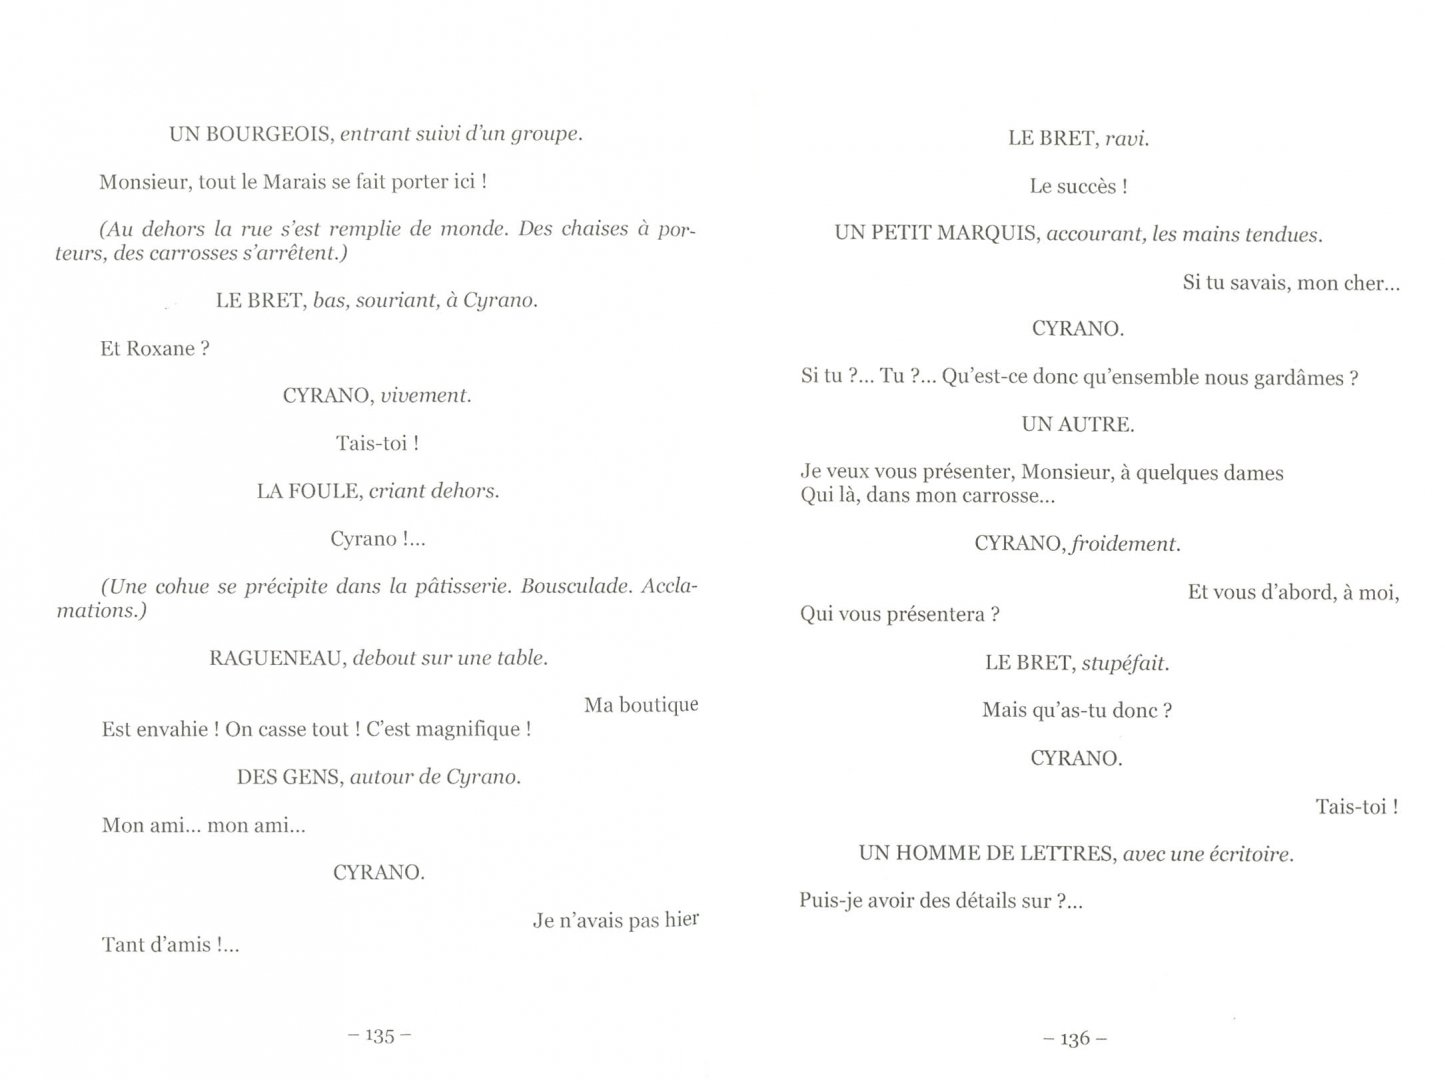 Иллюстрация 1 из 9 для Cyrano de Bergerac - Edmond Rostand | Лабиринт - книги. Источник: Лабиринт